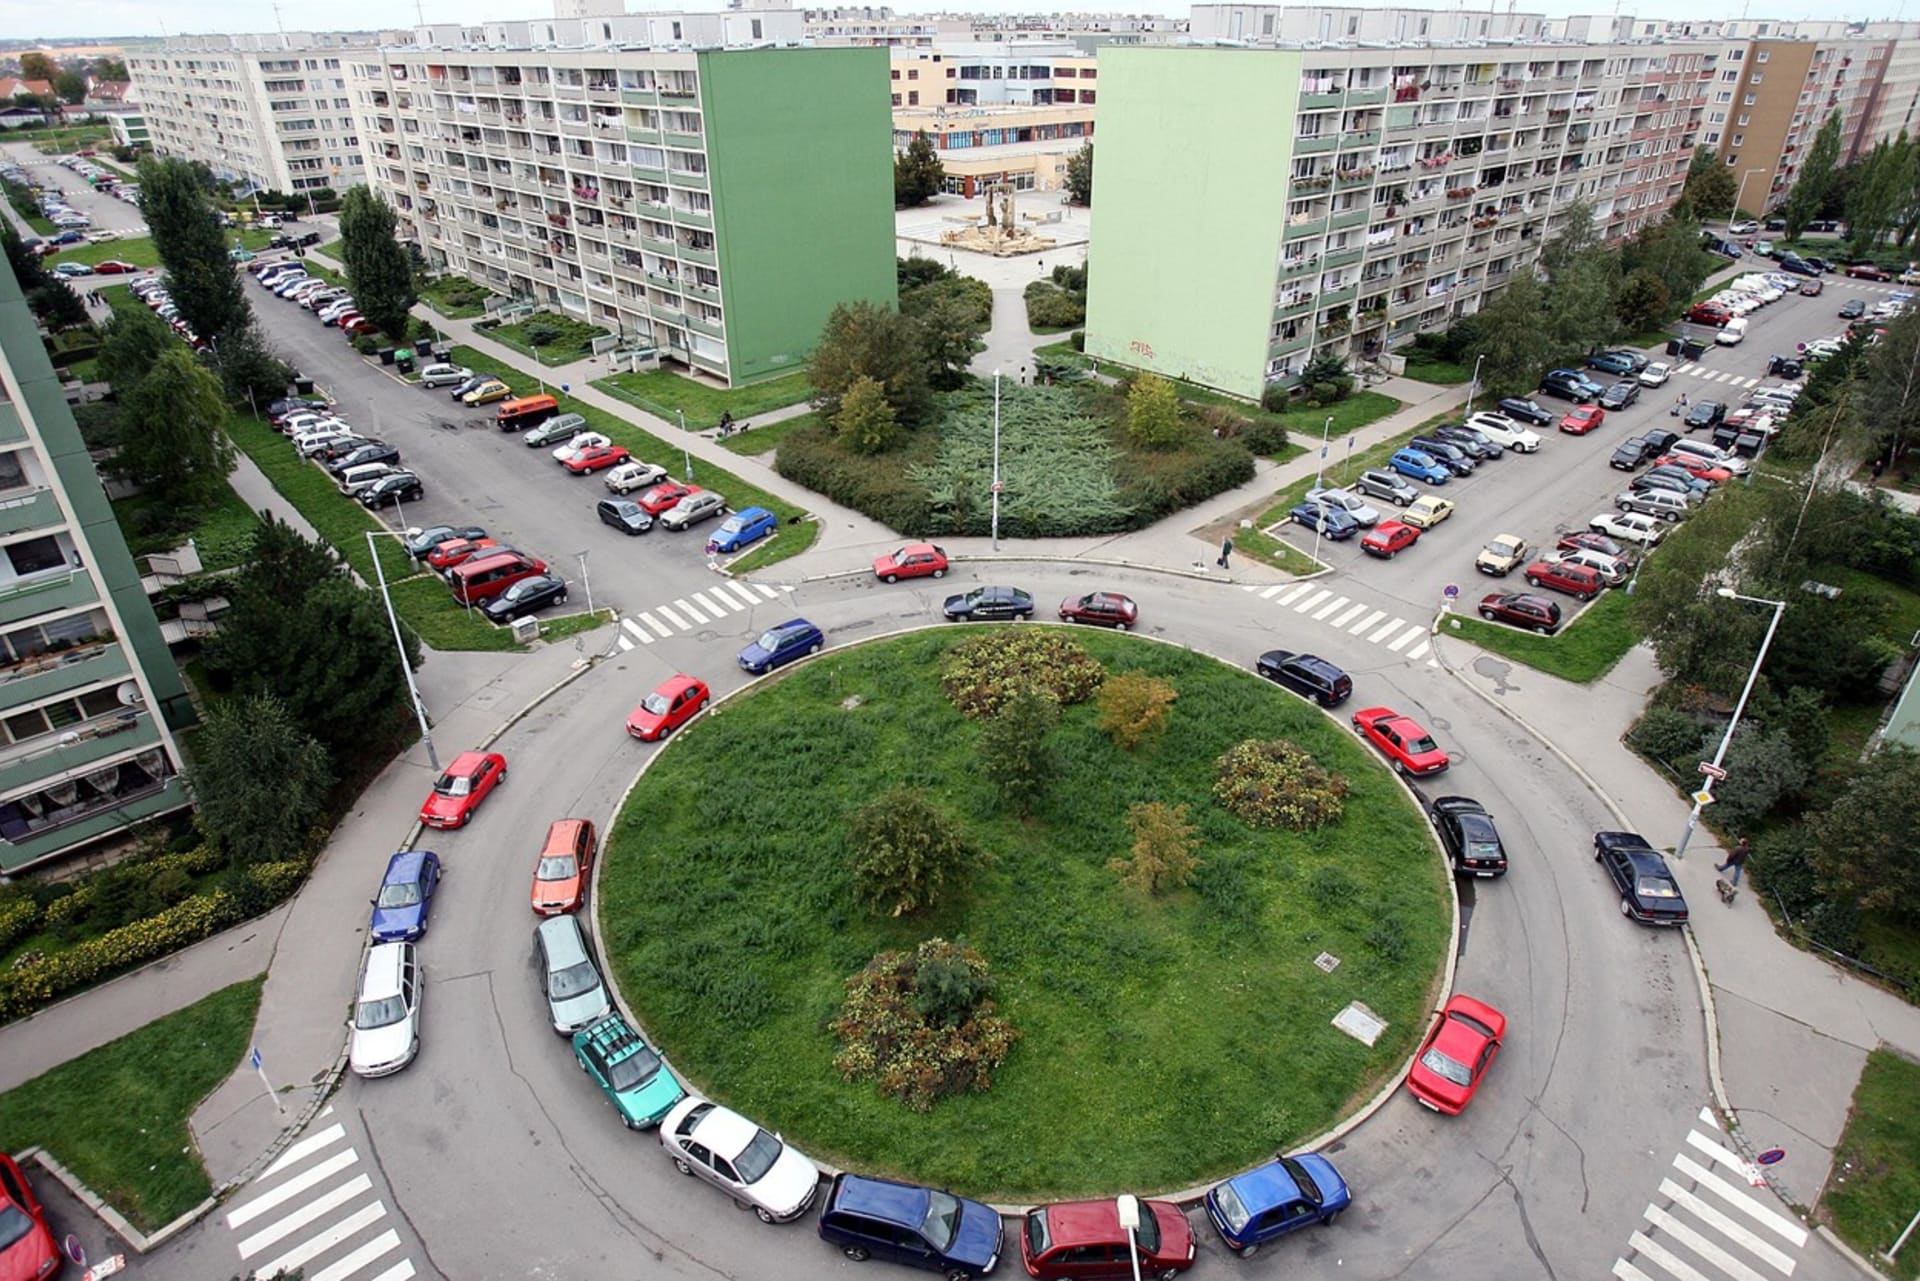 Problémy s parkováním v Praze řidiči řeší třeba i využitím kruhového objezdu. Snímek ze sídliště Velká Ohrada (Ilustrační foto)